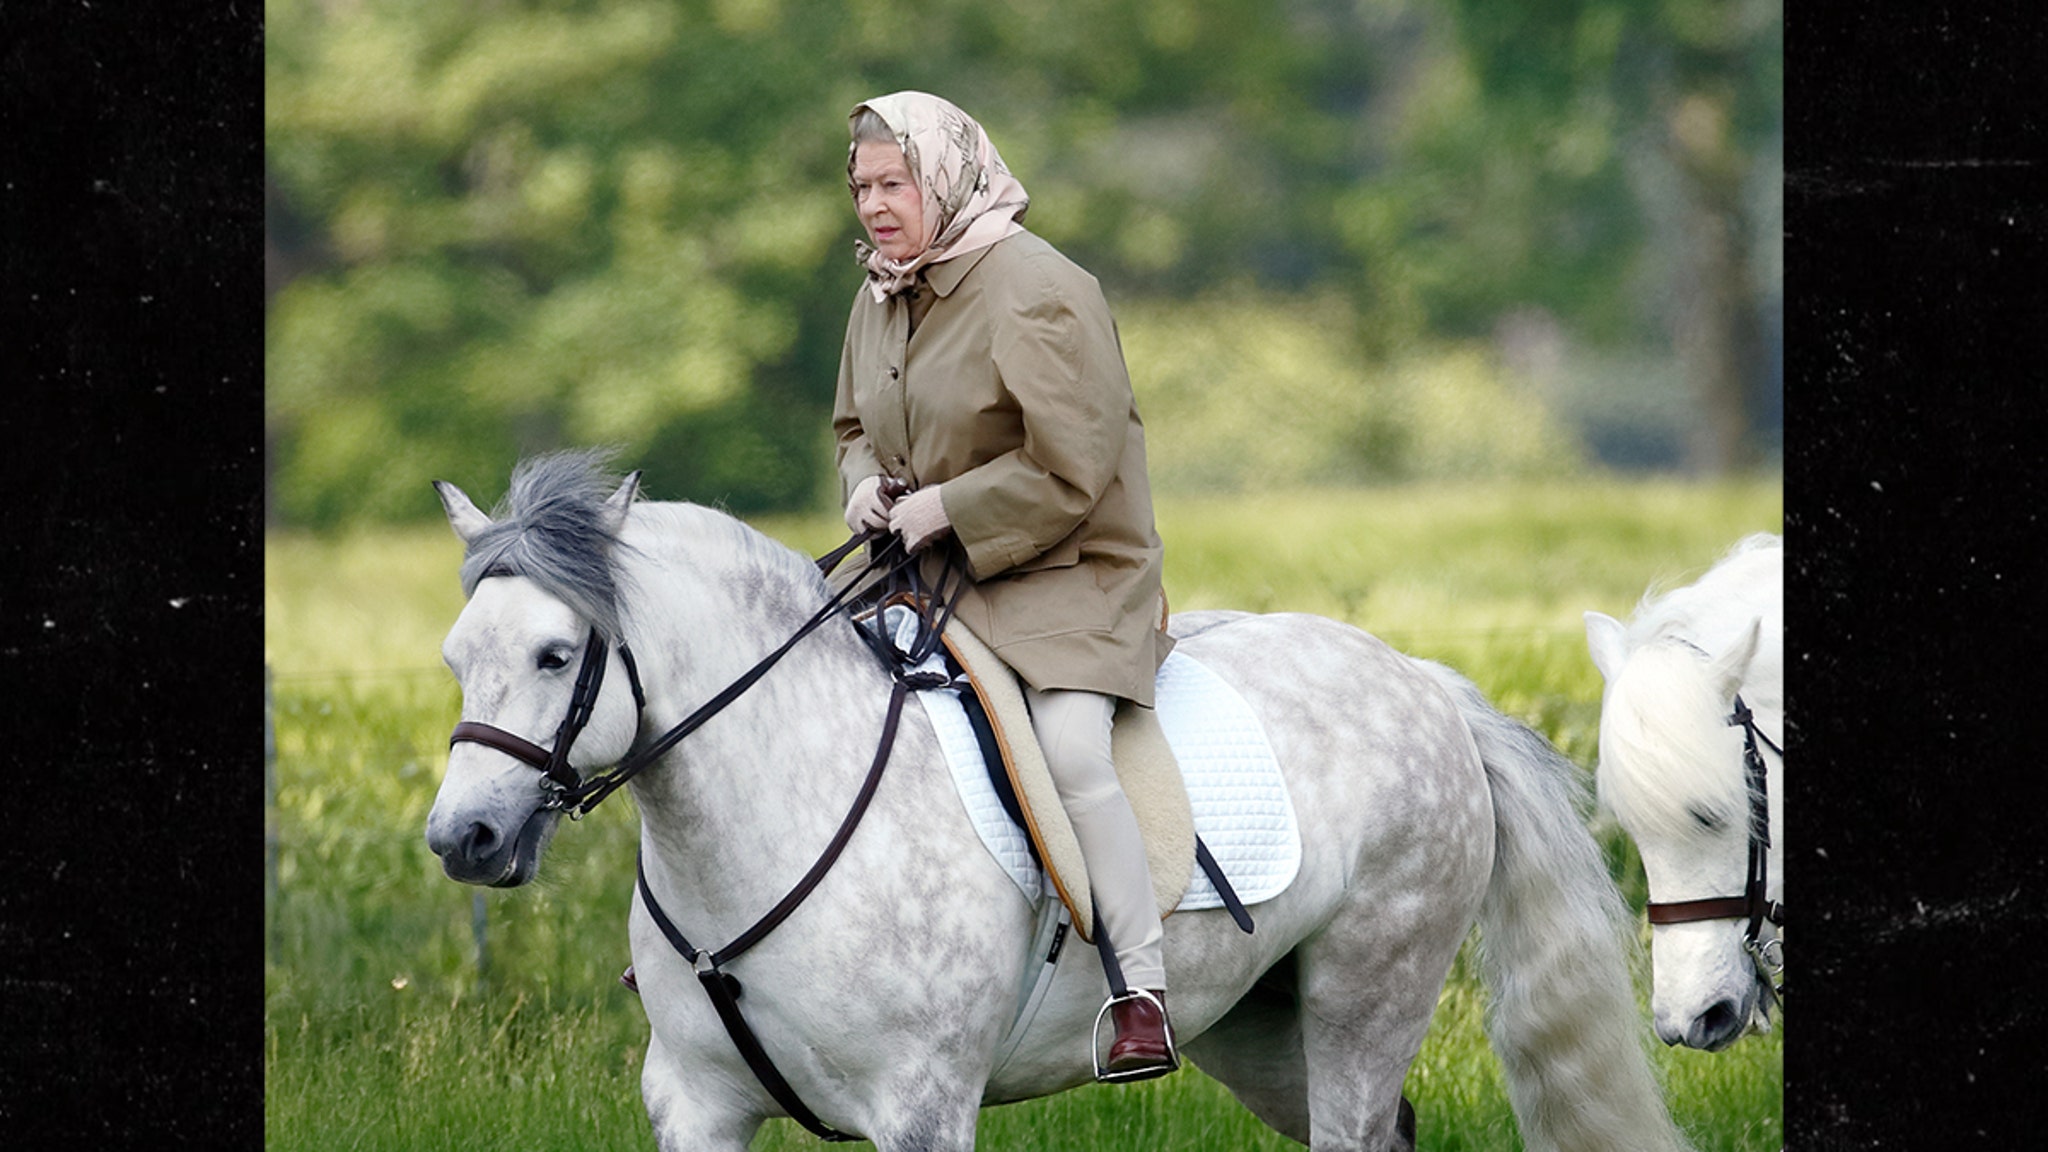 Queen Elizabeth II's Will Determines Who Gets Her Beloved Horses, Dogs